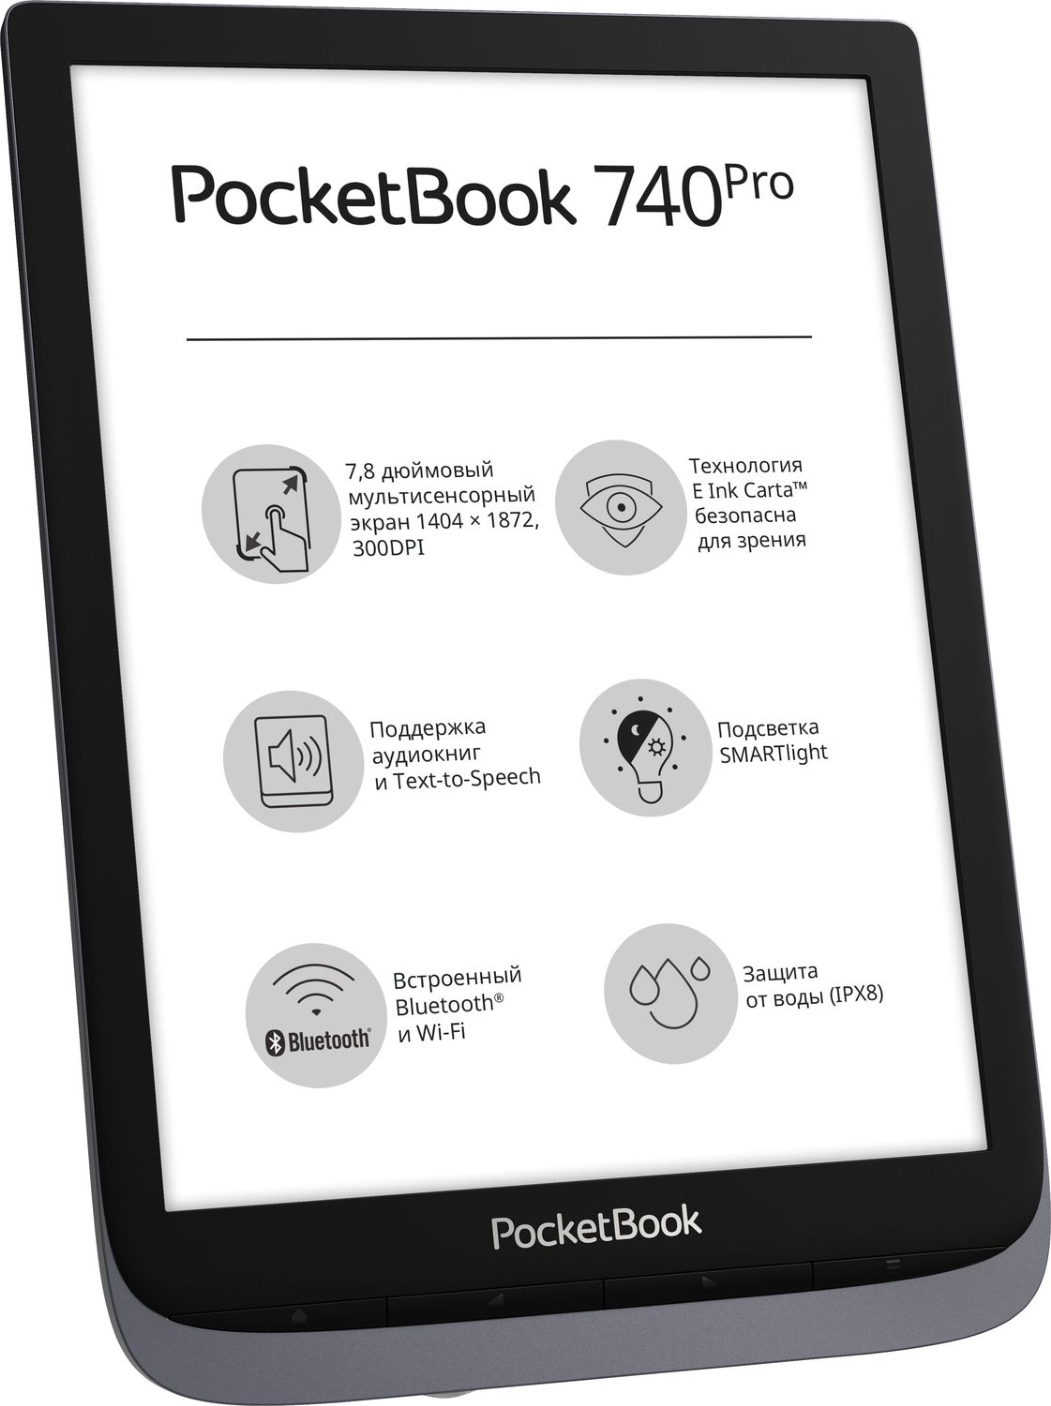 Pocketbook inkpad 3 pro. POCKETBOOK 740 Inkpad 3 Pro. 7.8" Электронная книга POCKETBOOK 740 Pro / Inkpad 3 Pro 1872x1404, e-Ink, серый. POCKETBOOK 740 Pro.